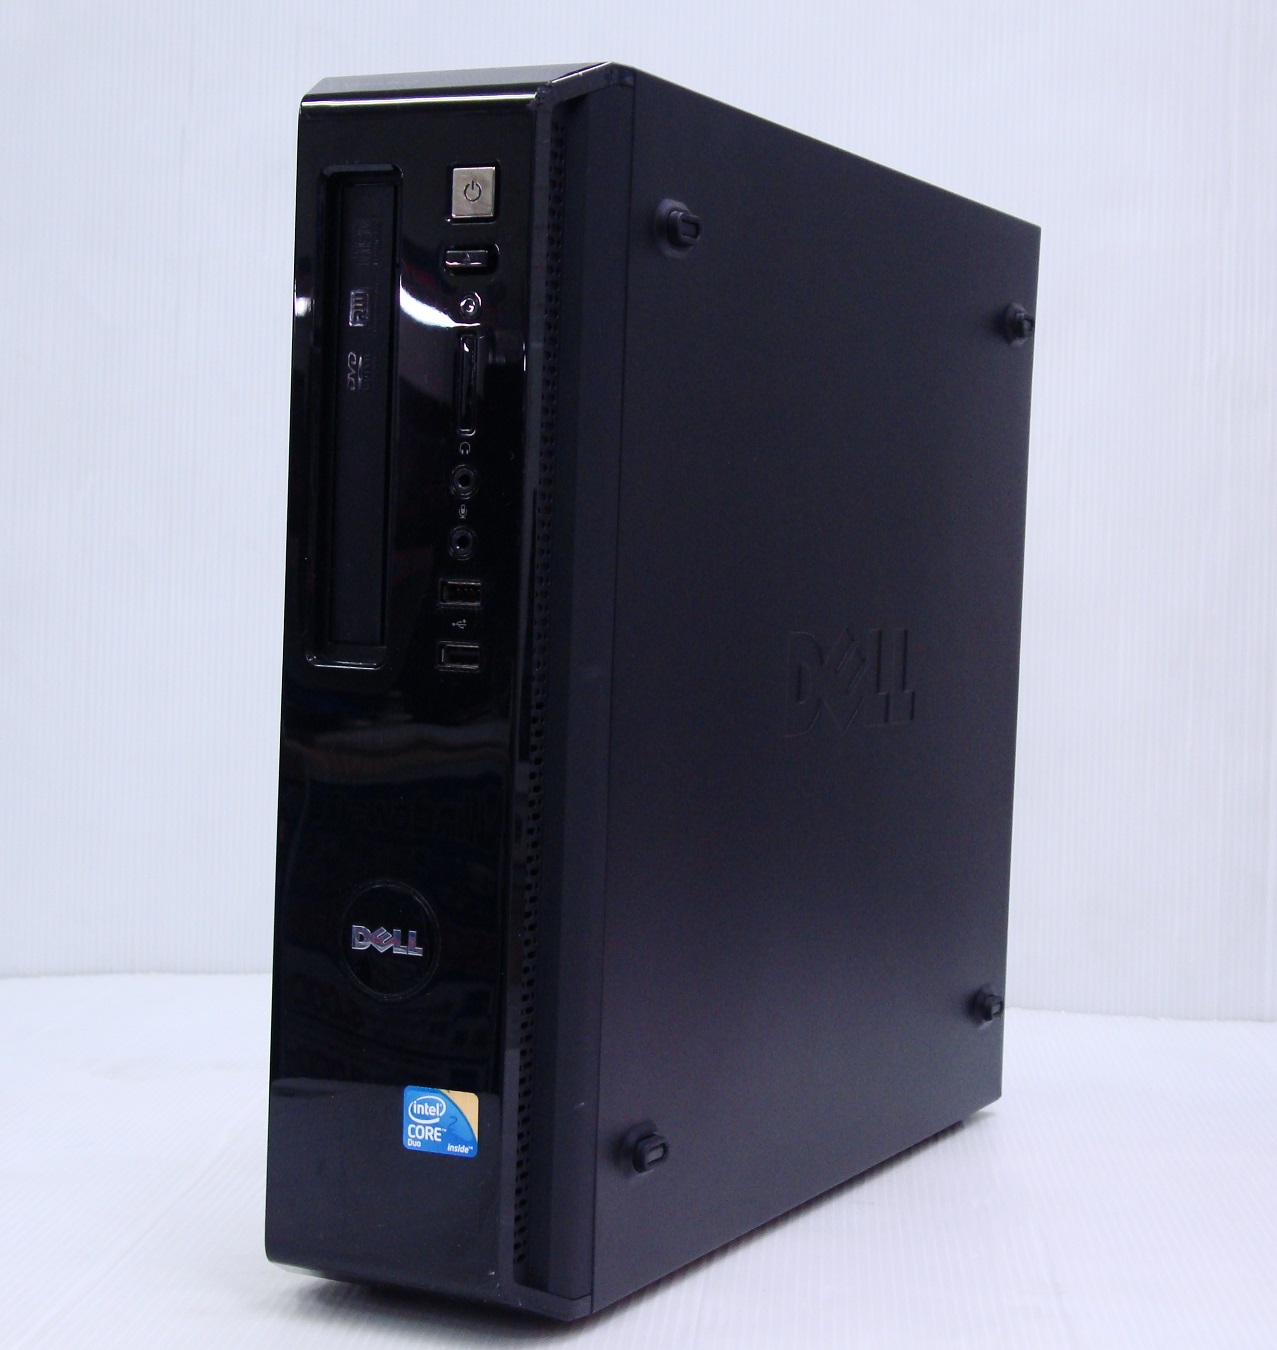 デスクトップパソコンDELL Vostro 230 D03D -WindowsXP Professional